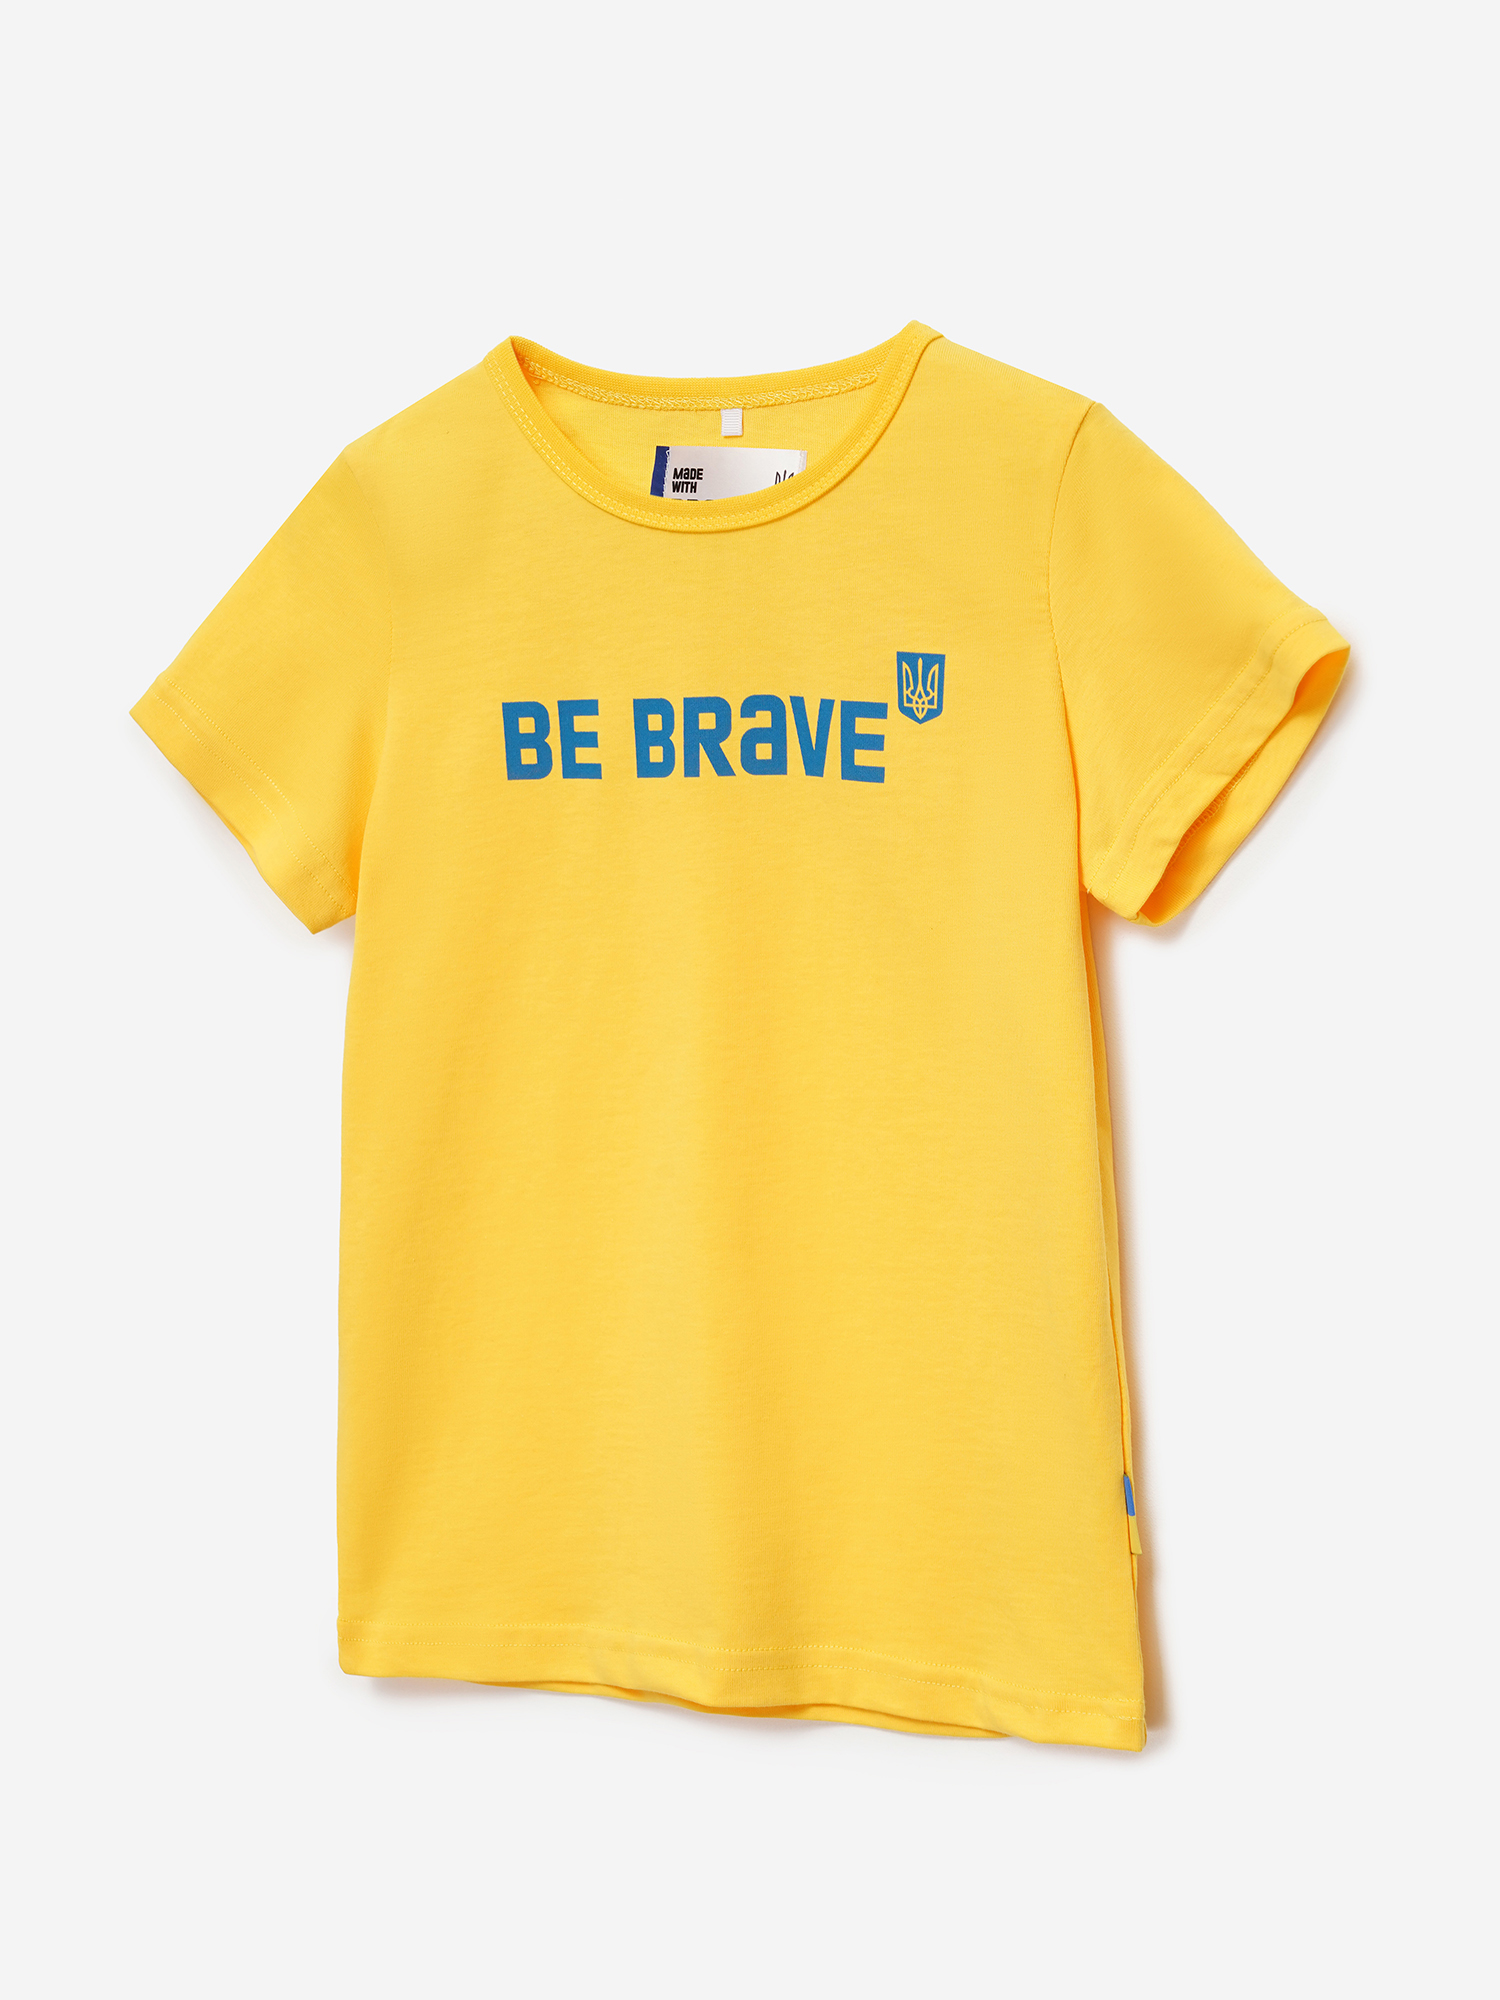 Картинка Футболка "Bravery" жовта для хлопчиків